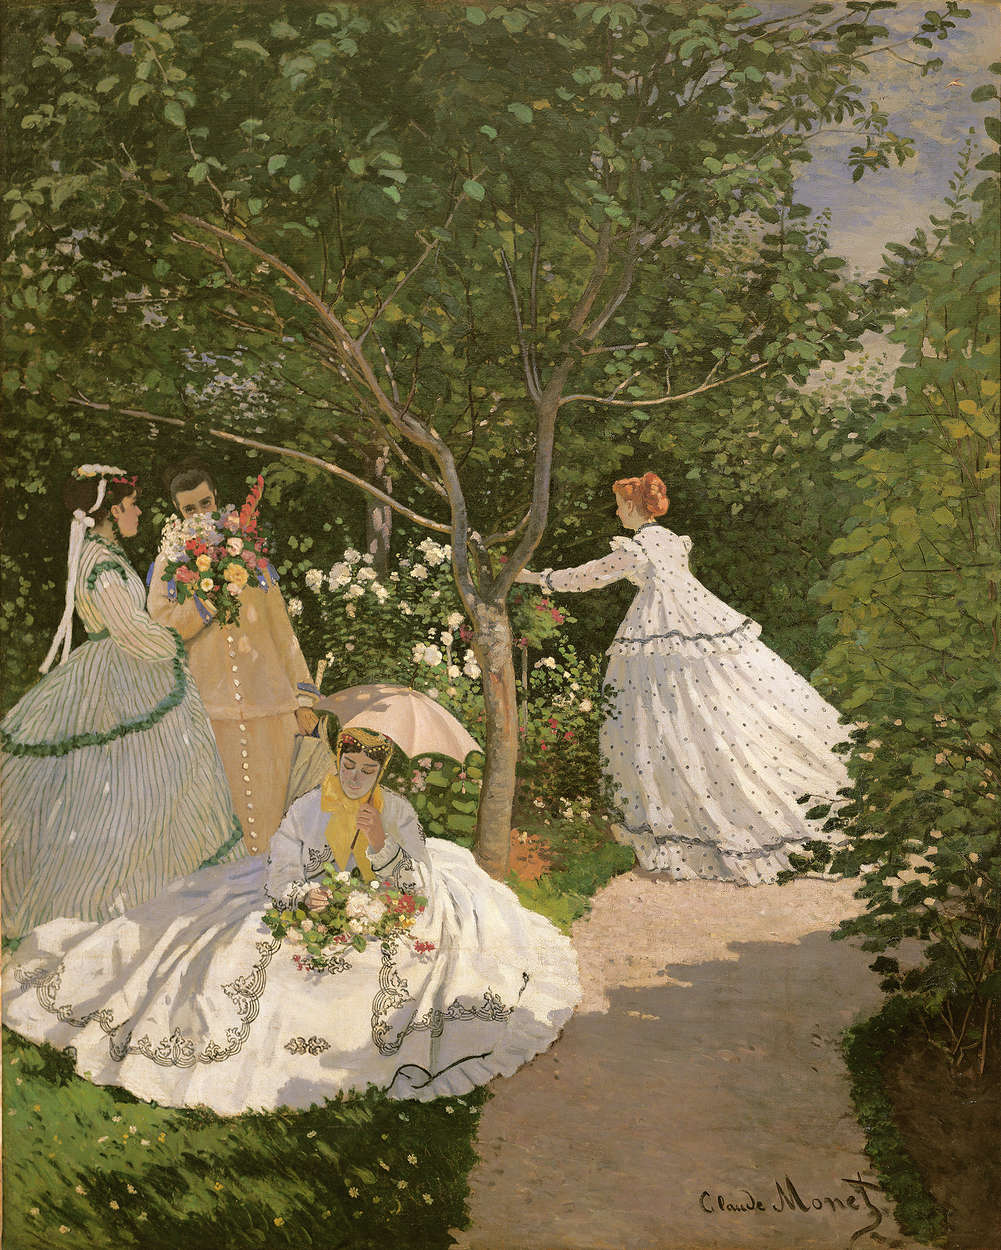             Mural "Mujeres en el jardín" de Claude Monet
        